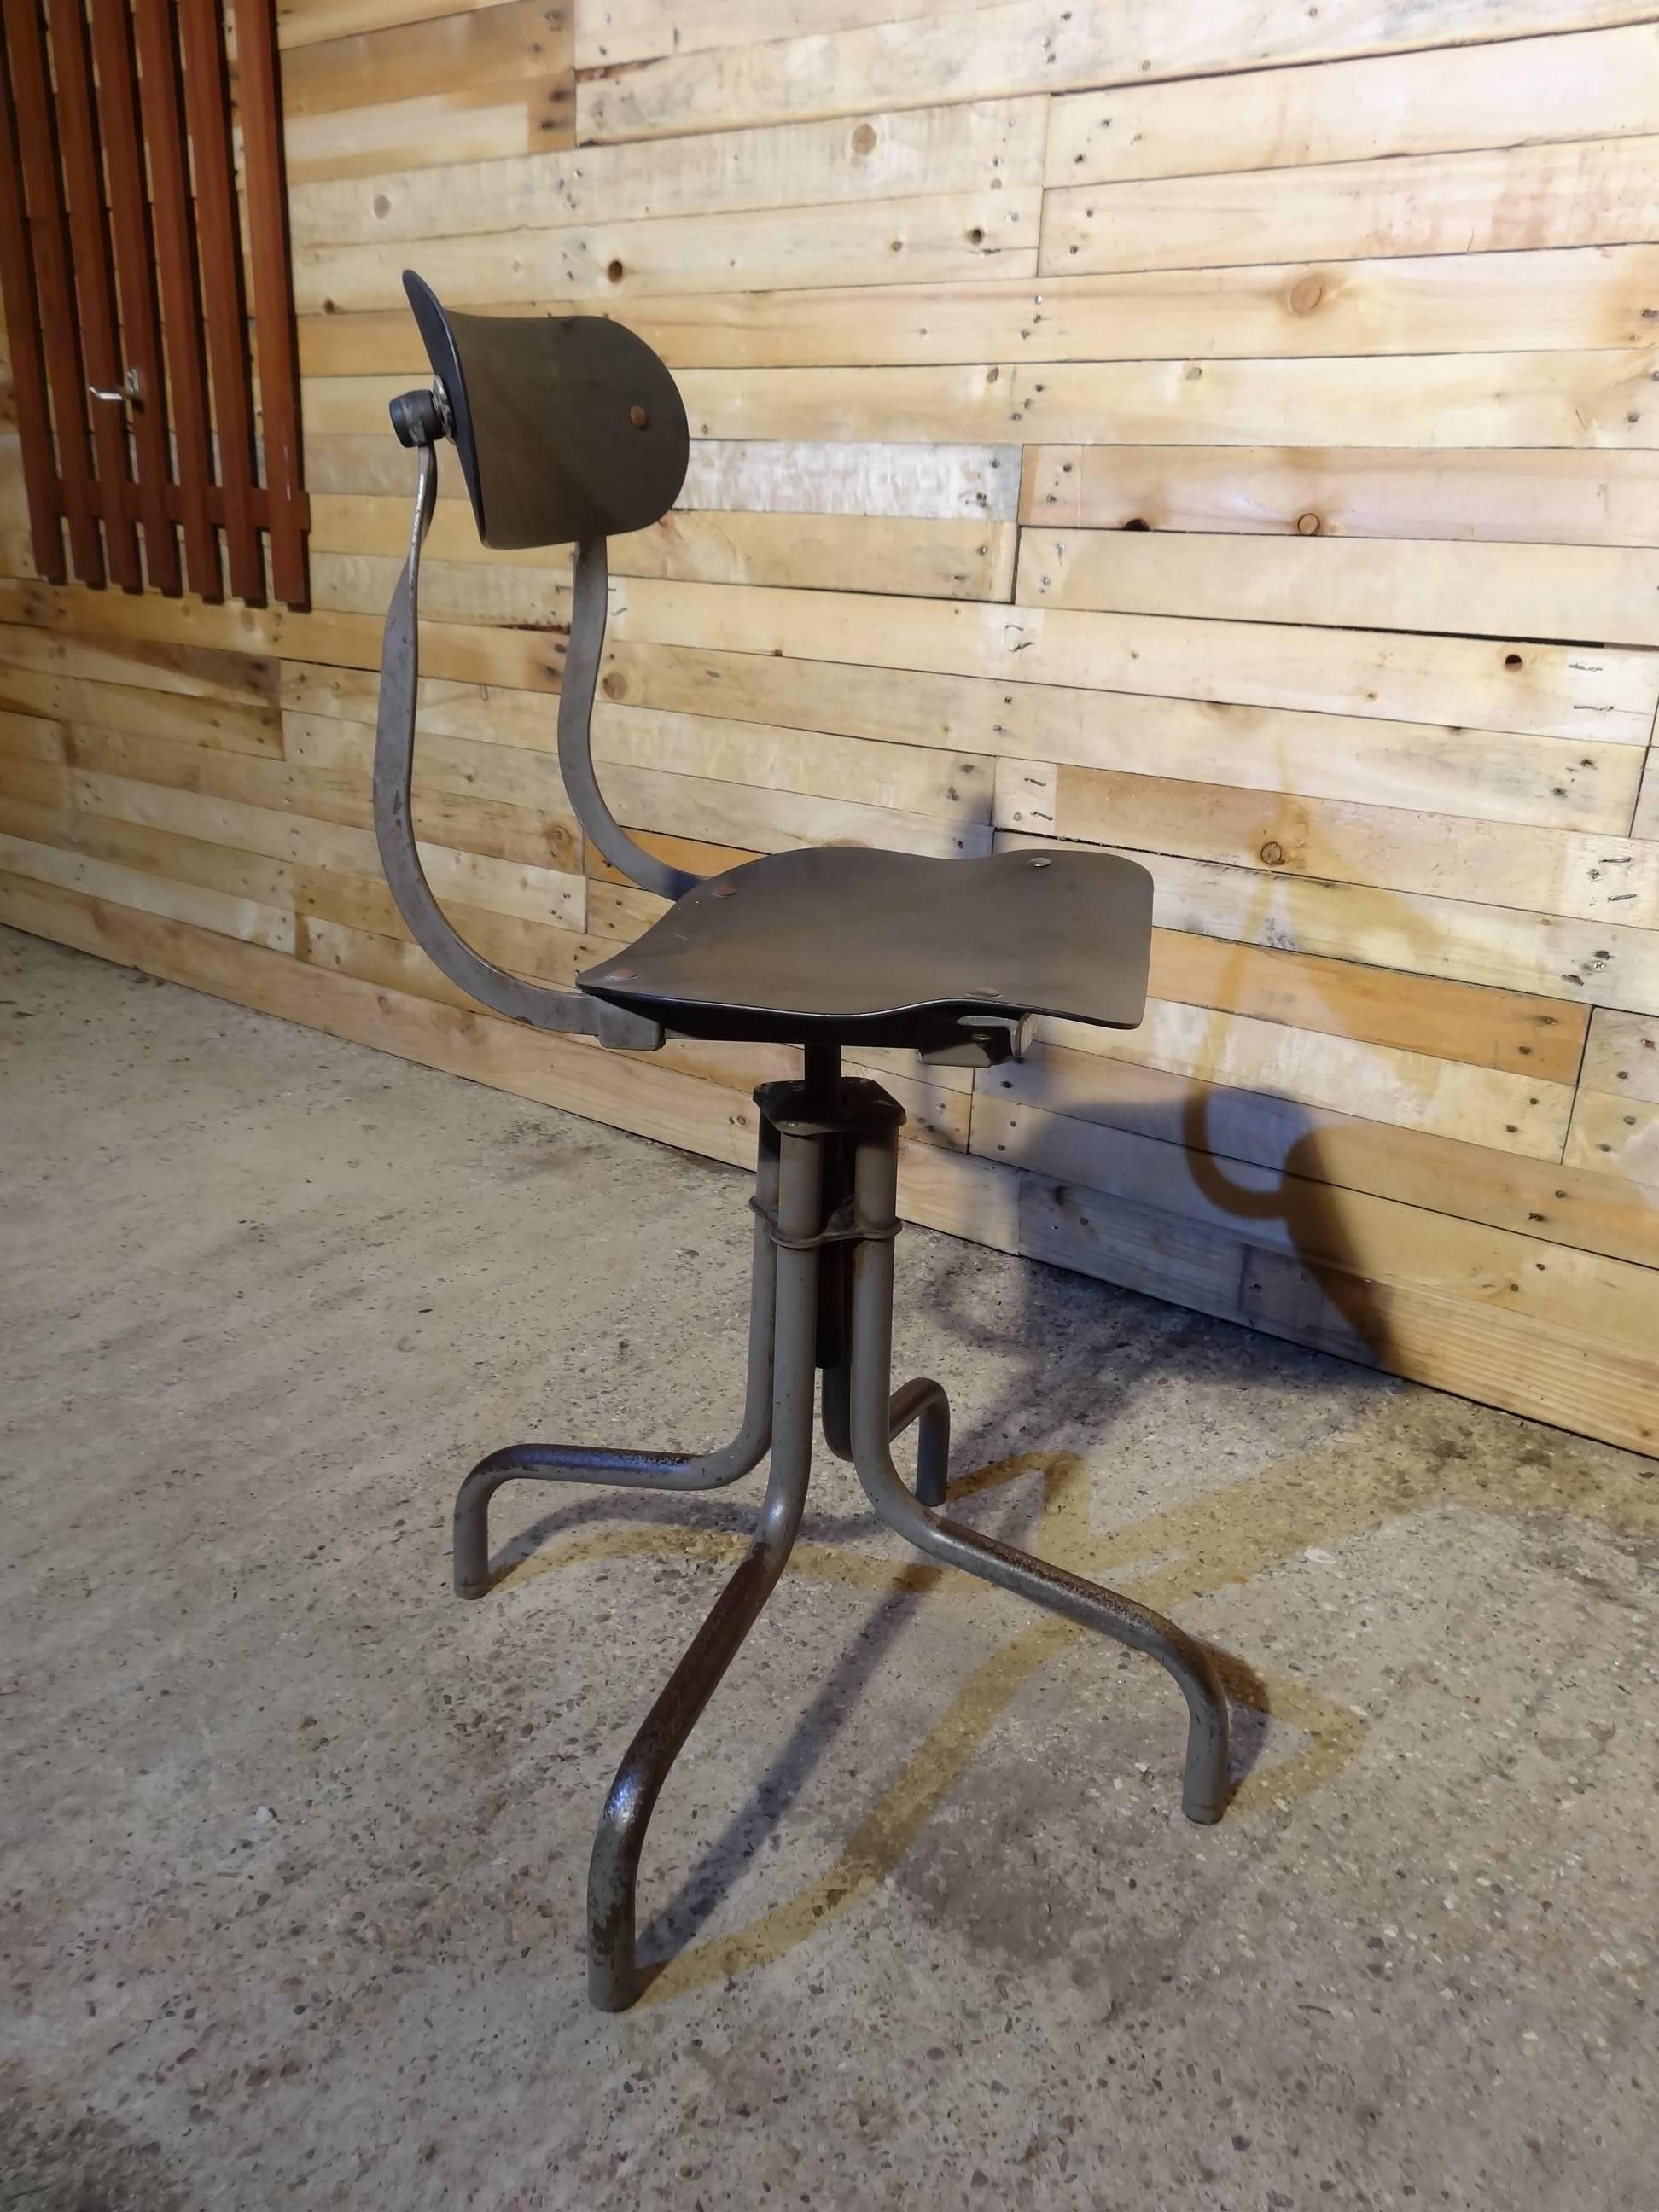 Anglais Tan-Sad Chair Co. 1930s Industrial Metal Height Adjustable Sewing Stool (Tabouret de couture en métal réglable en hauteur) en vente